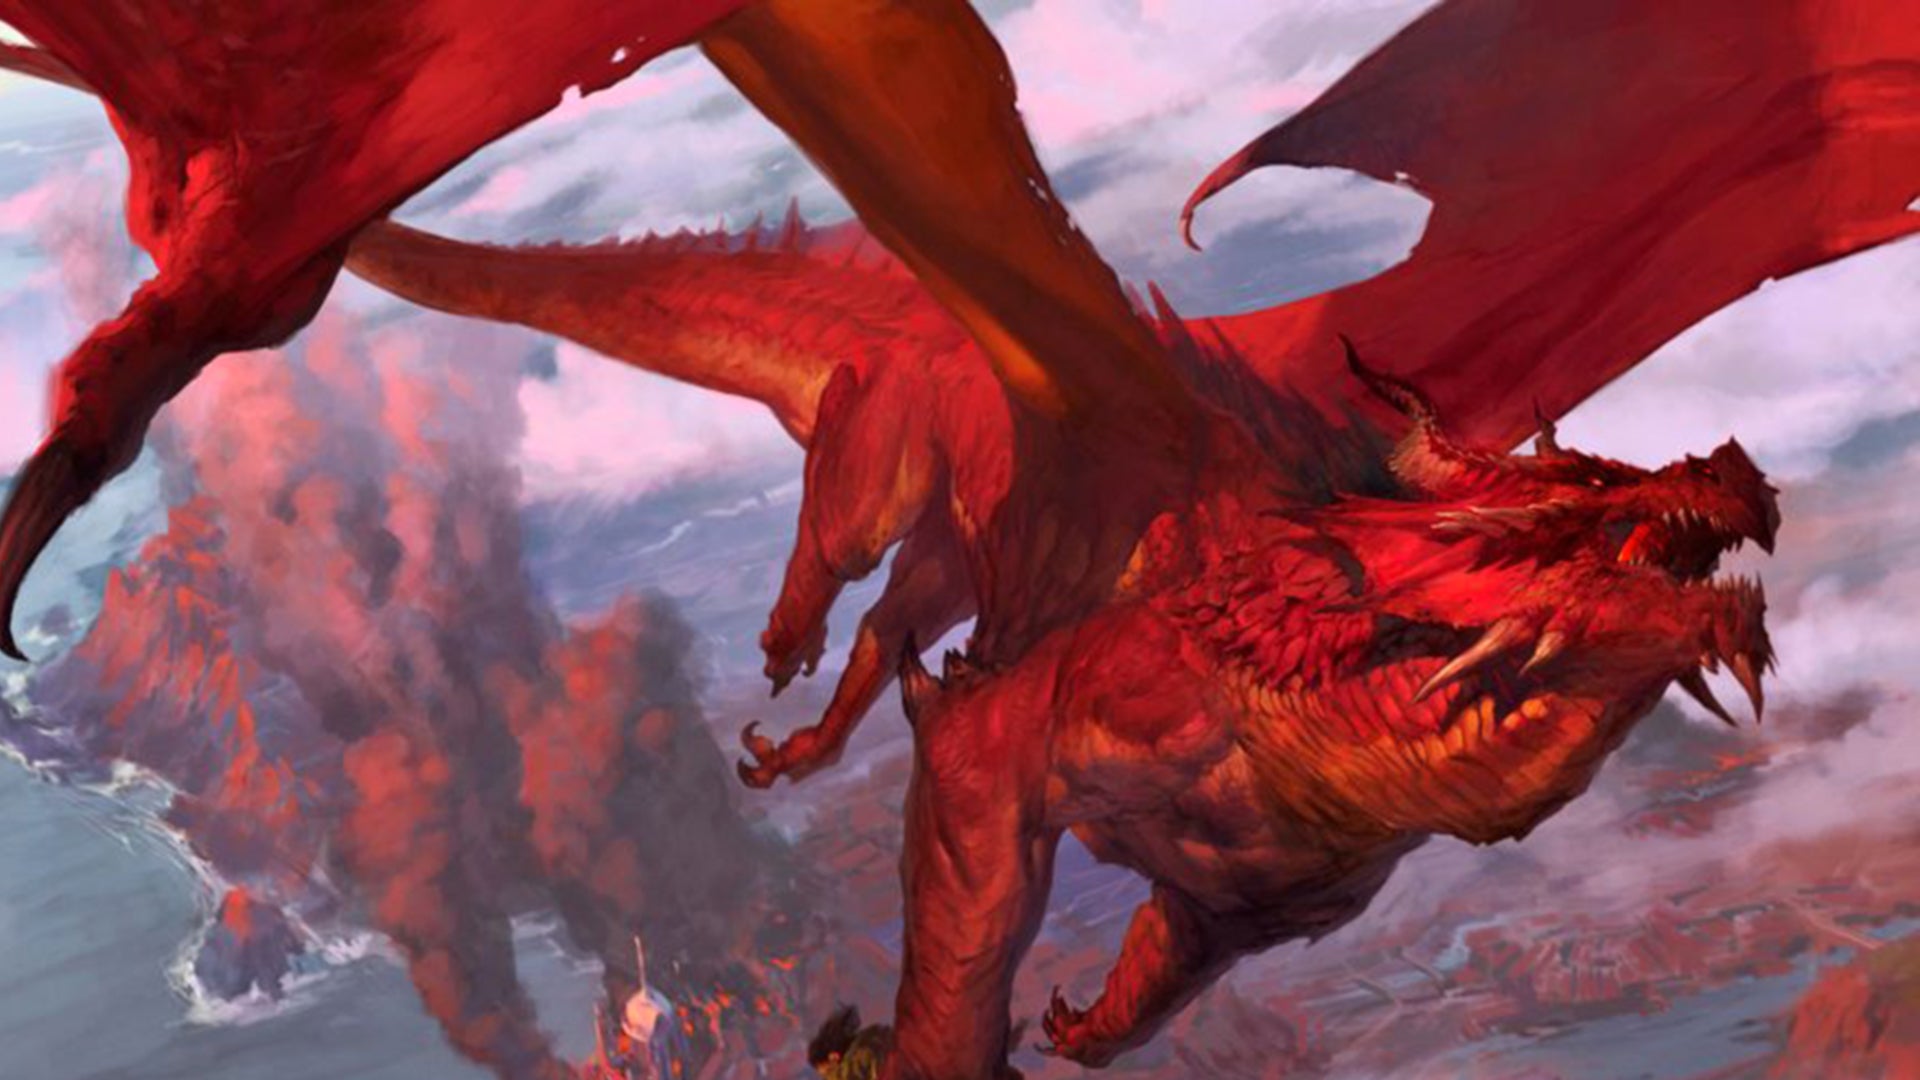 Opsplitsen tegel Hobart How to play Dungeons & Dragons 5E: A beginner's guide | Dicebreaker